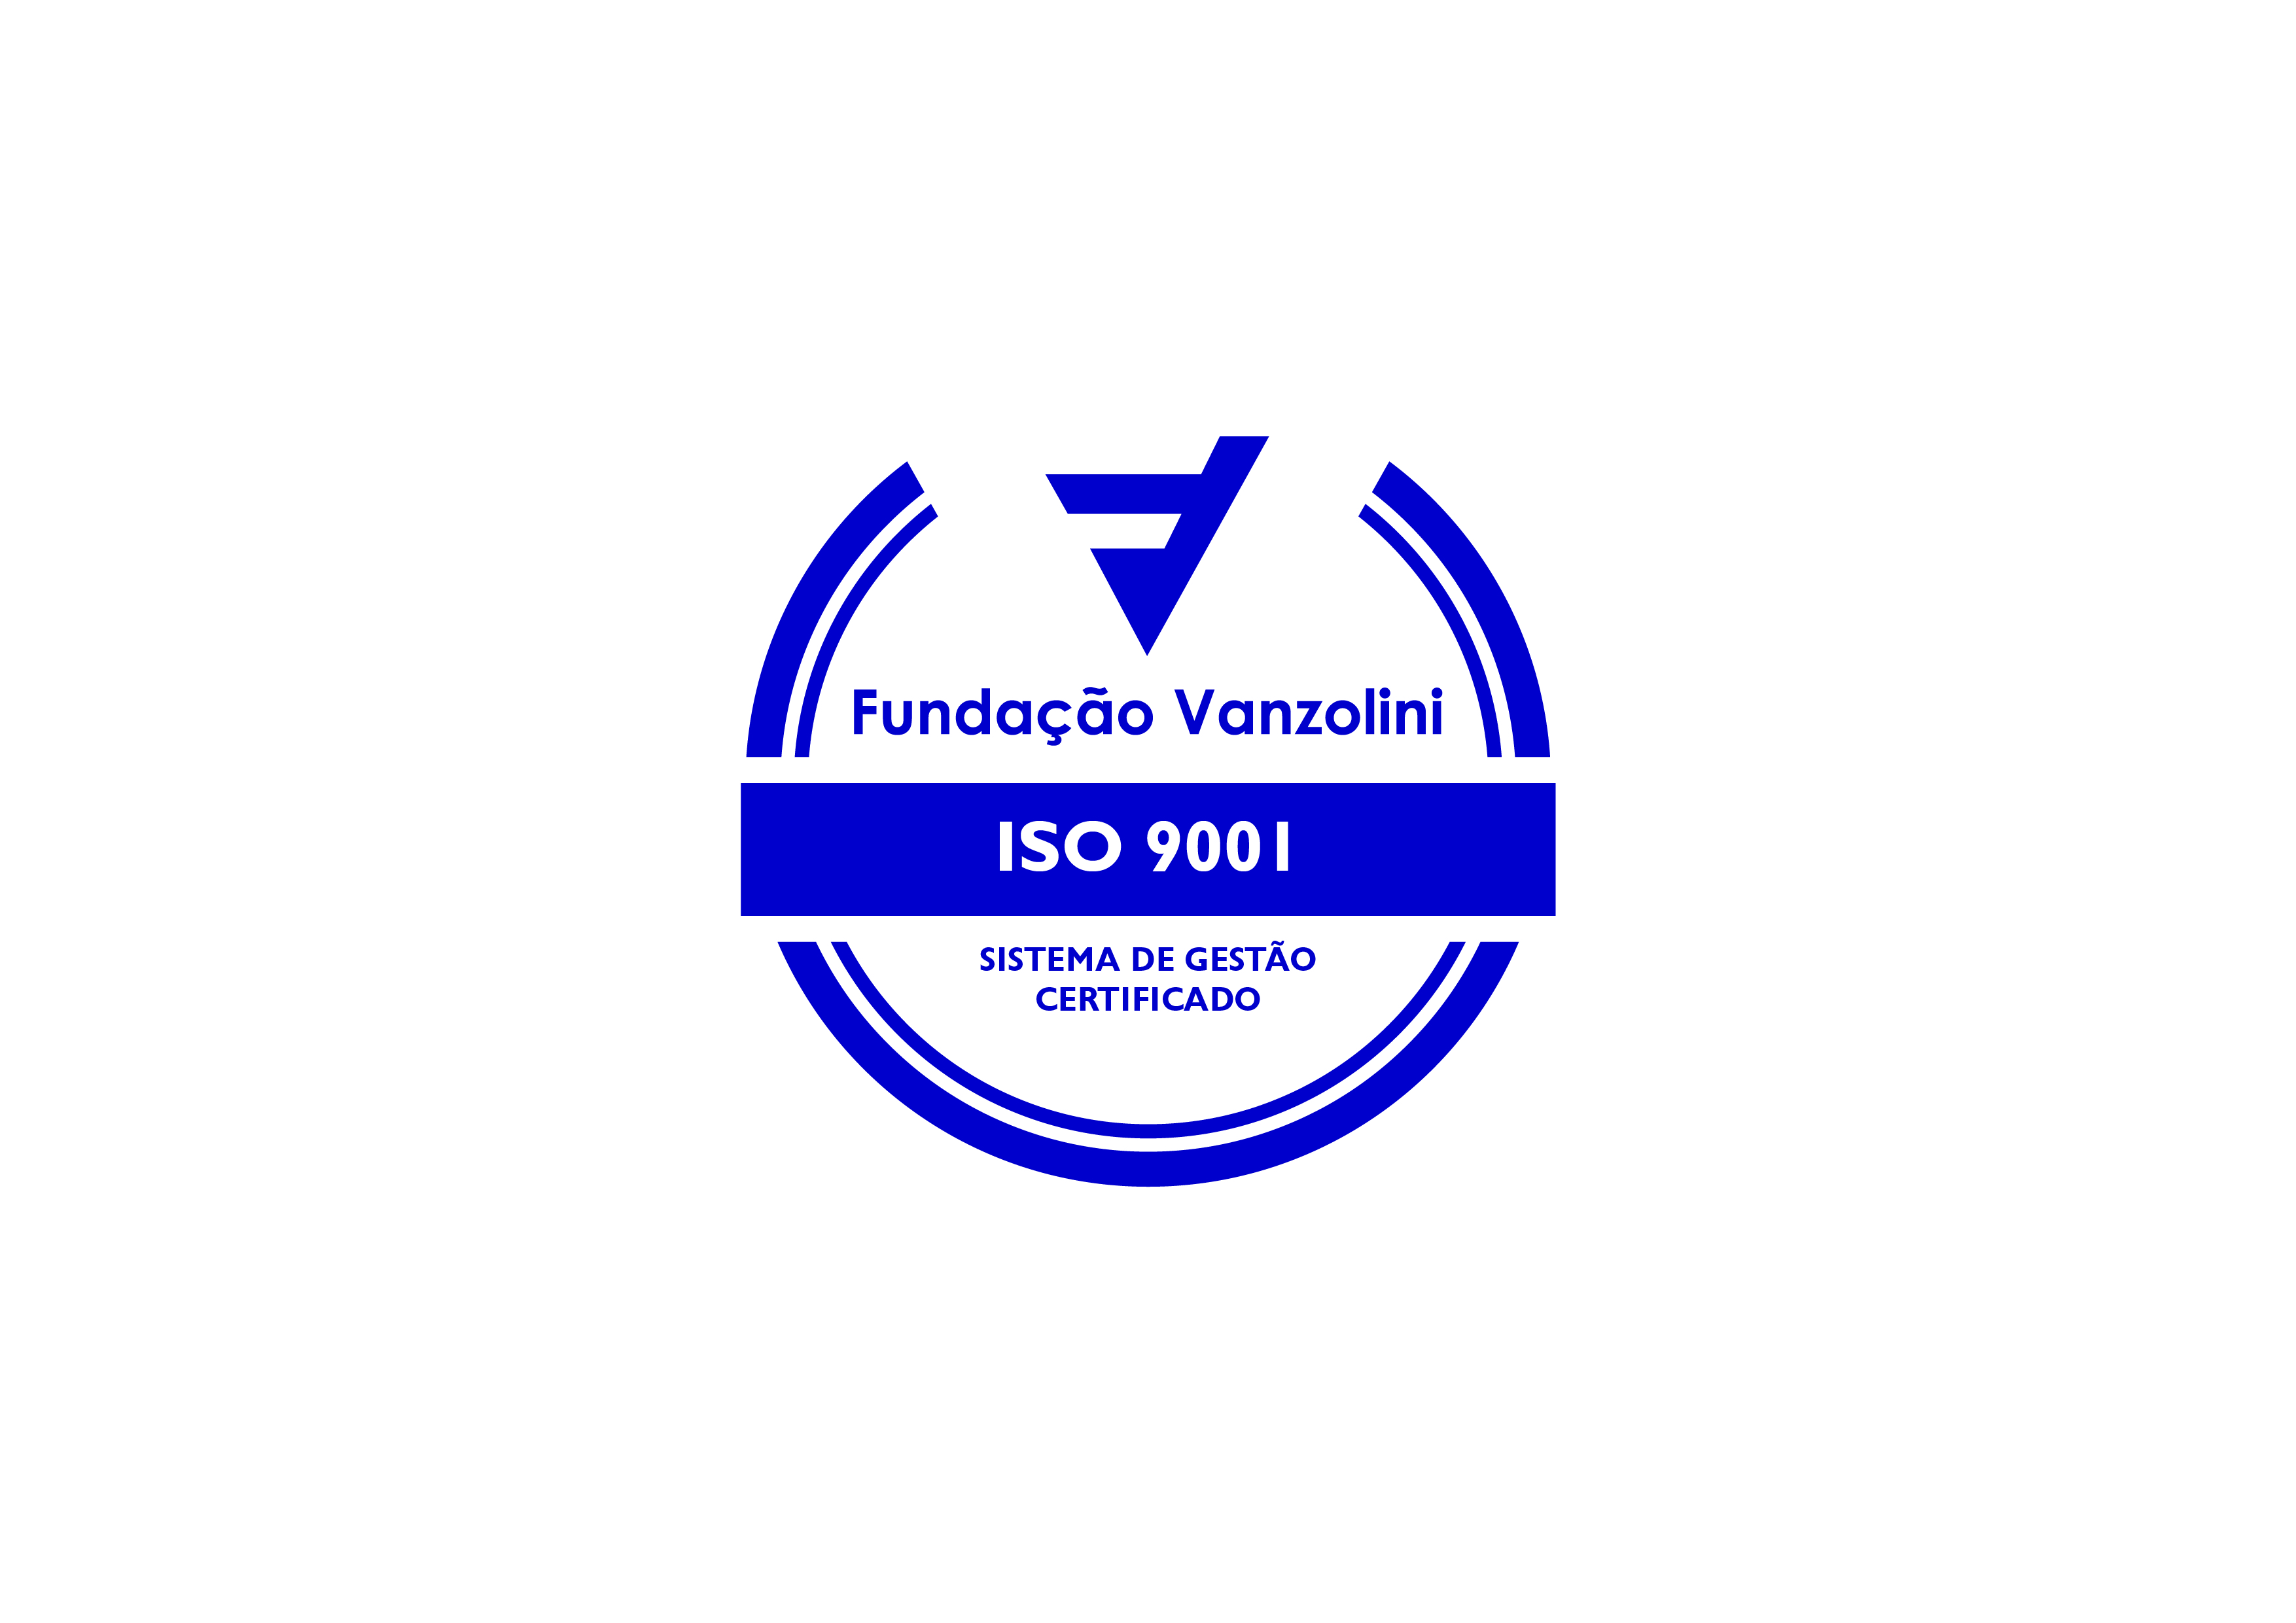 Logomarca azul e branca da Fundação Vanzolini